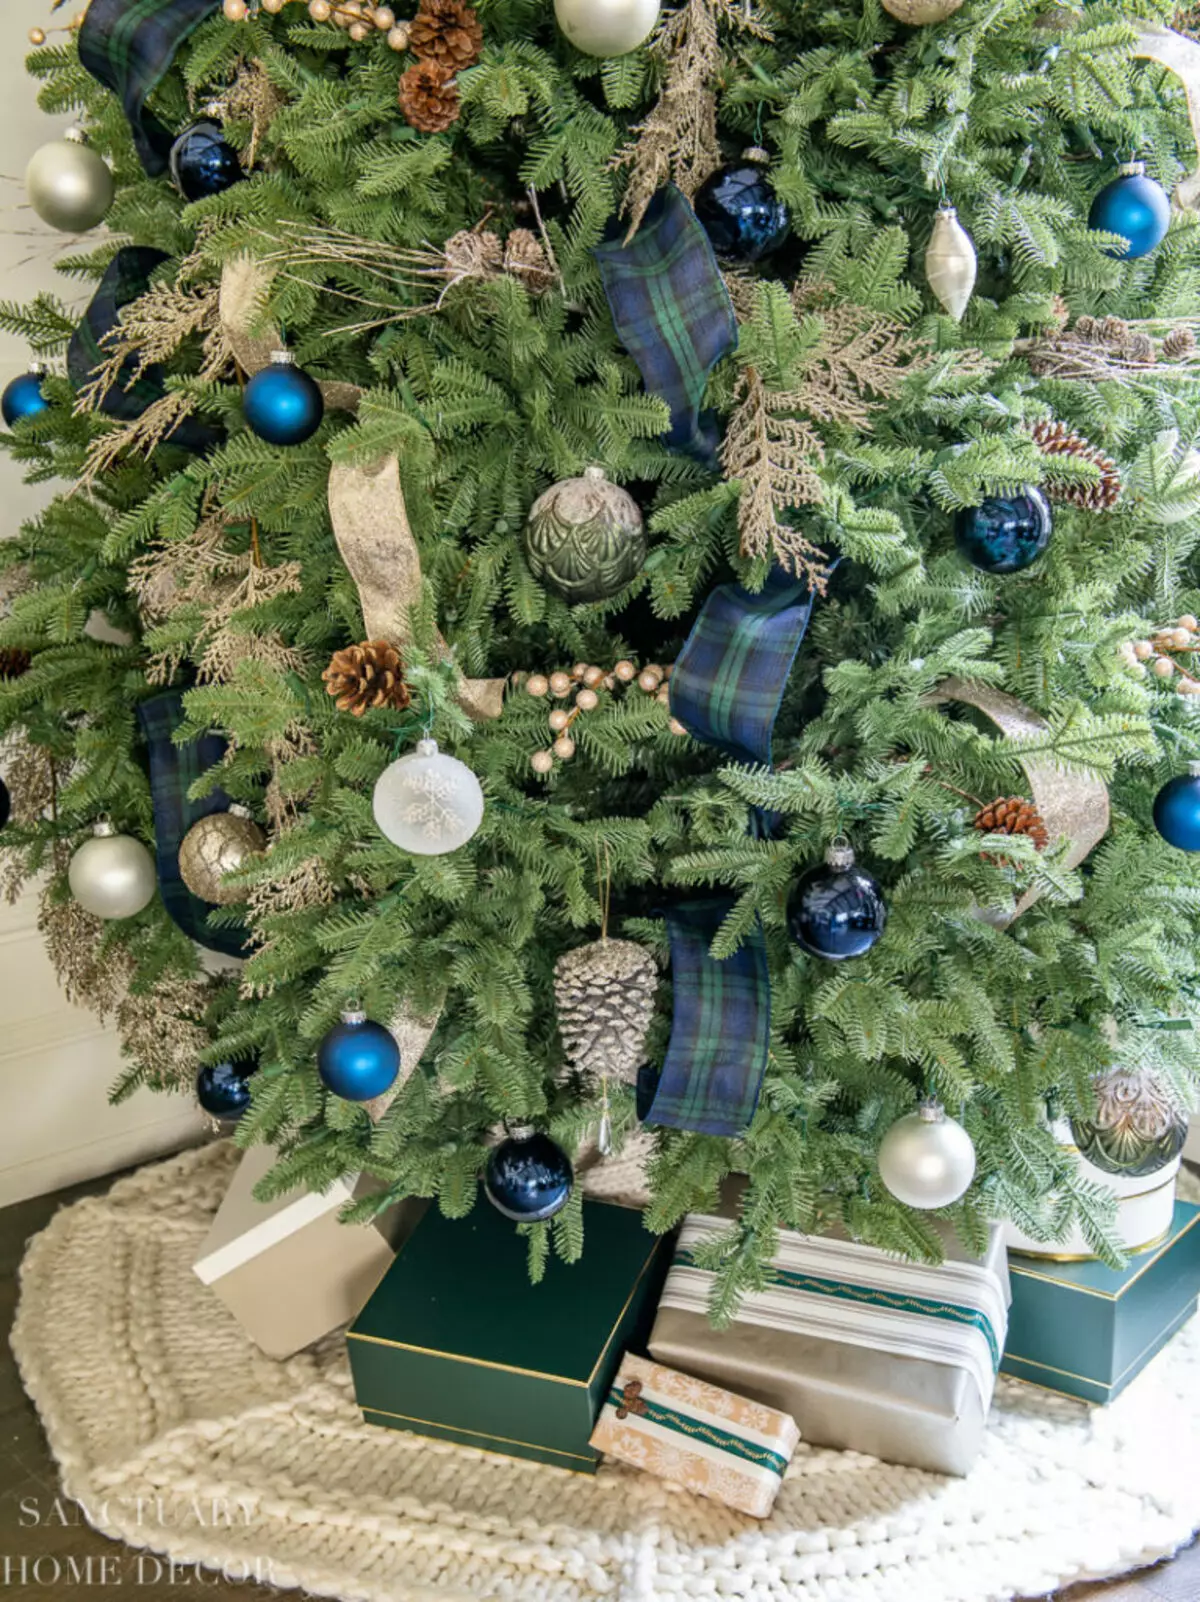 如何在蓝色银色颜色装饰圣诞树？ 30张照片如何打扮球和其他装饰在蓝色和银色的色调？ 7627_16